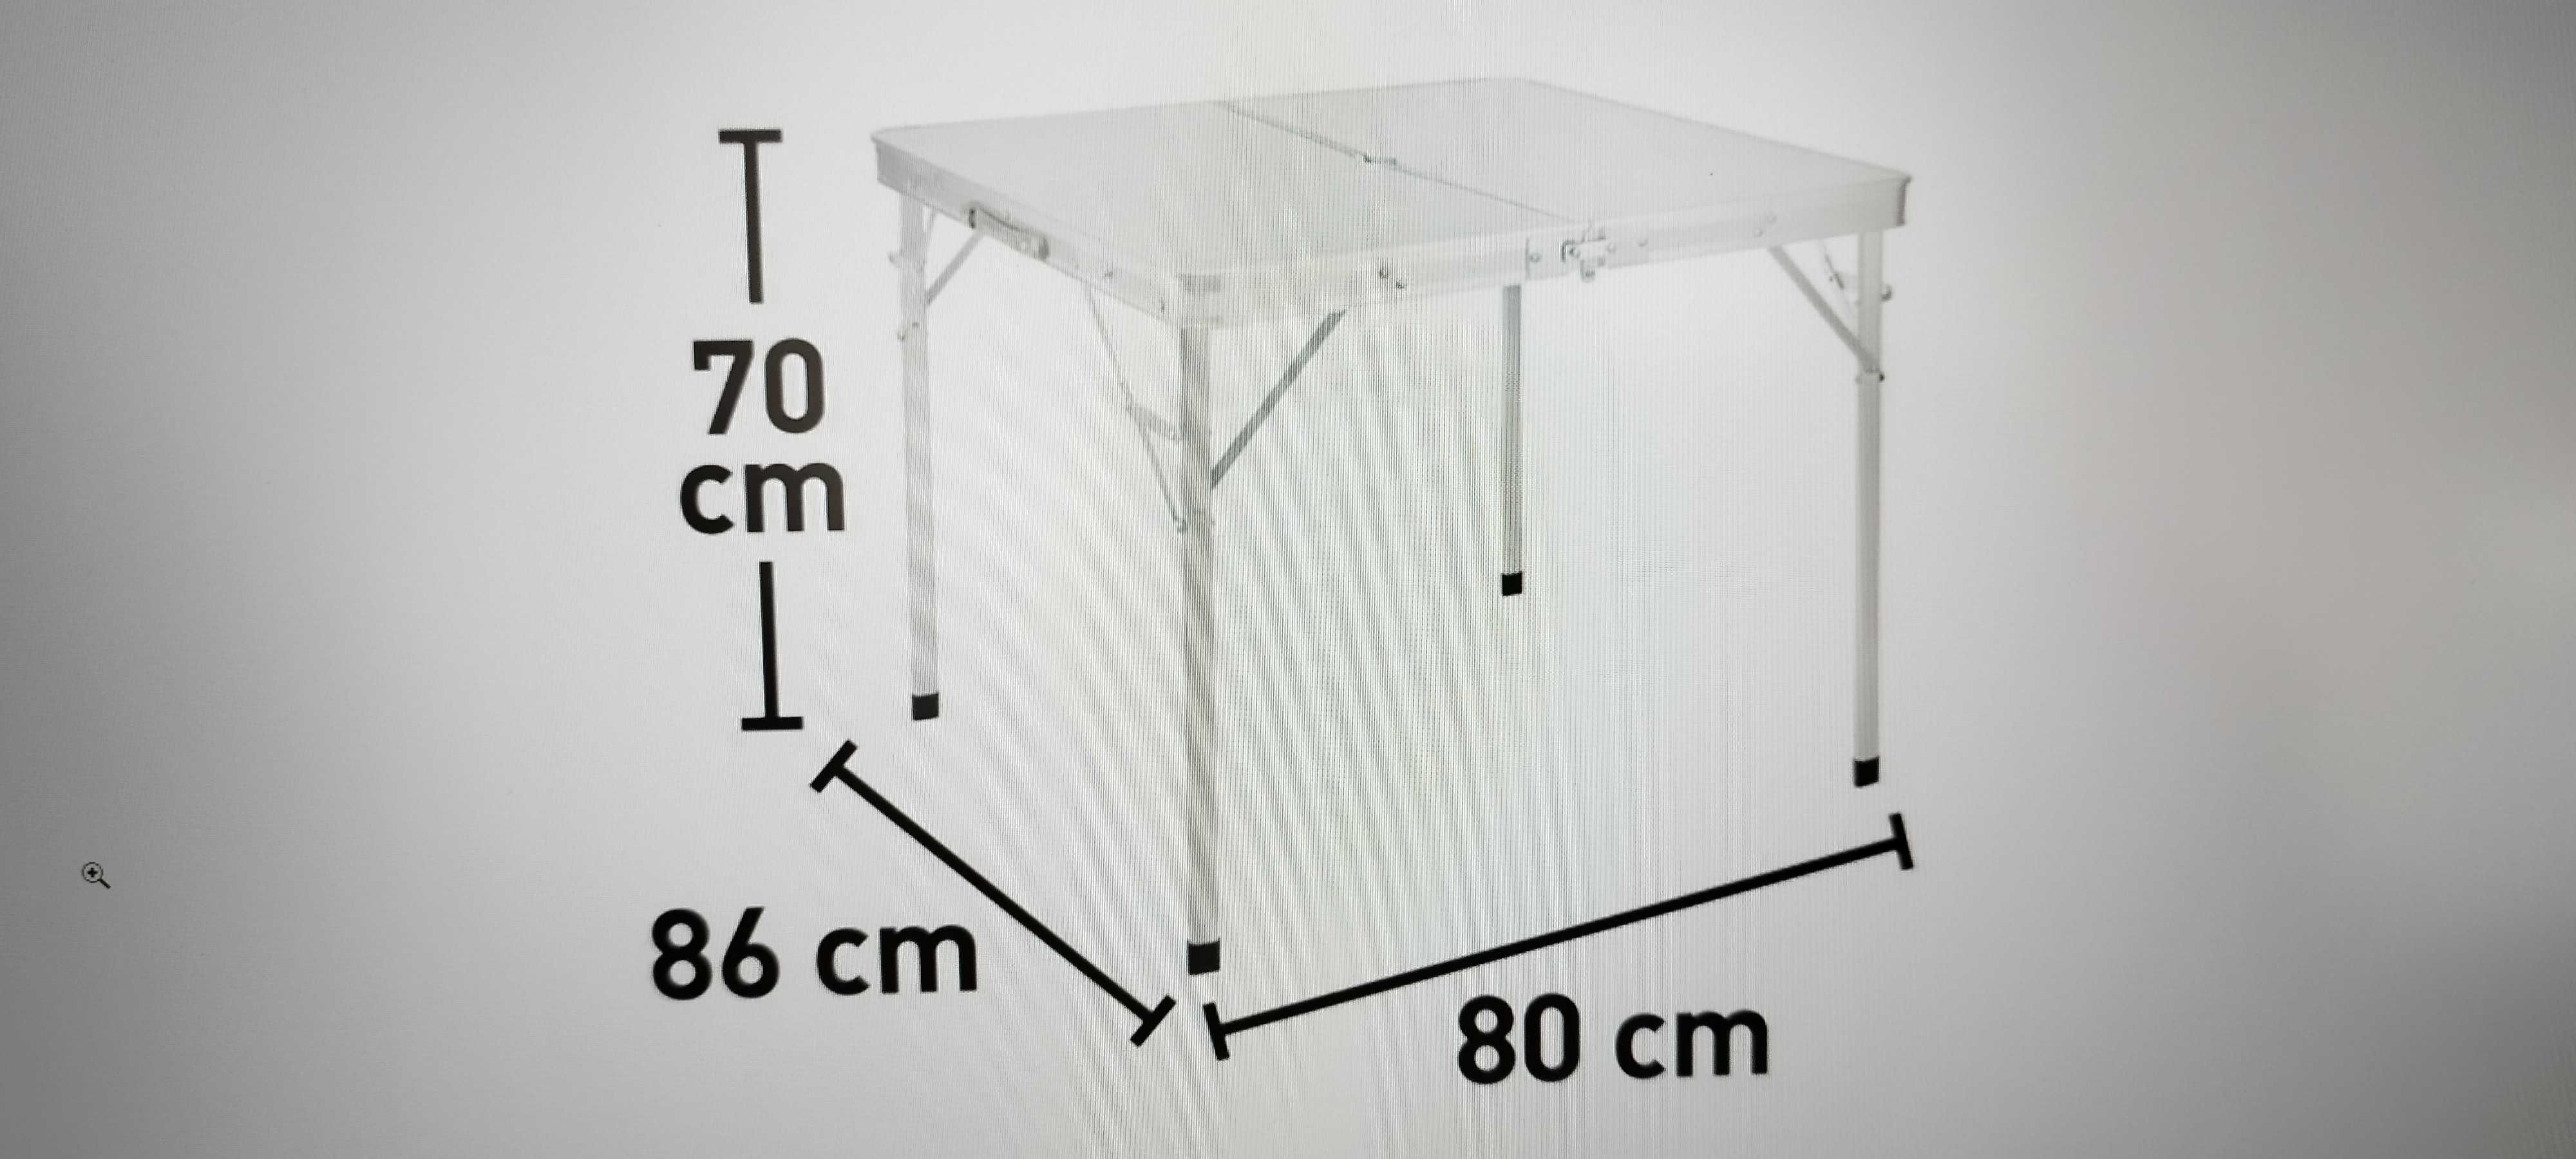 Stolik siedziska kampingowy aluminiowy składany 86 x 80 x 70 cm Arinos